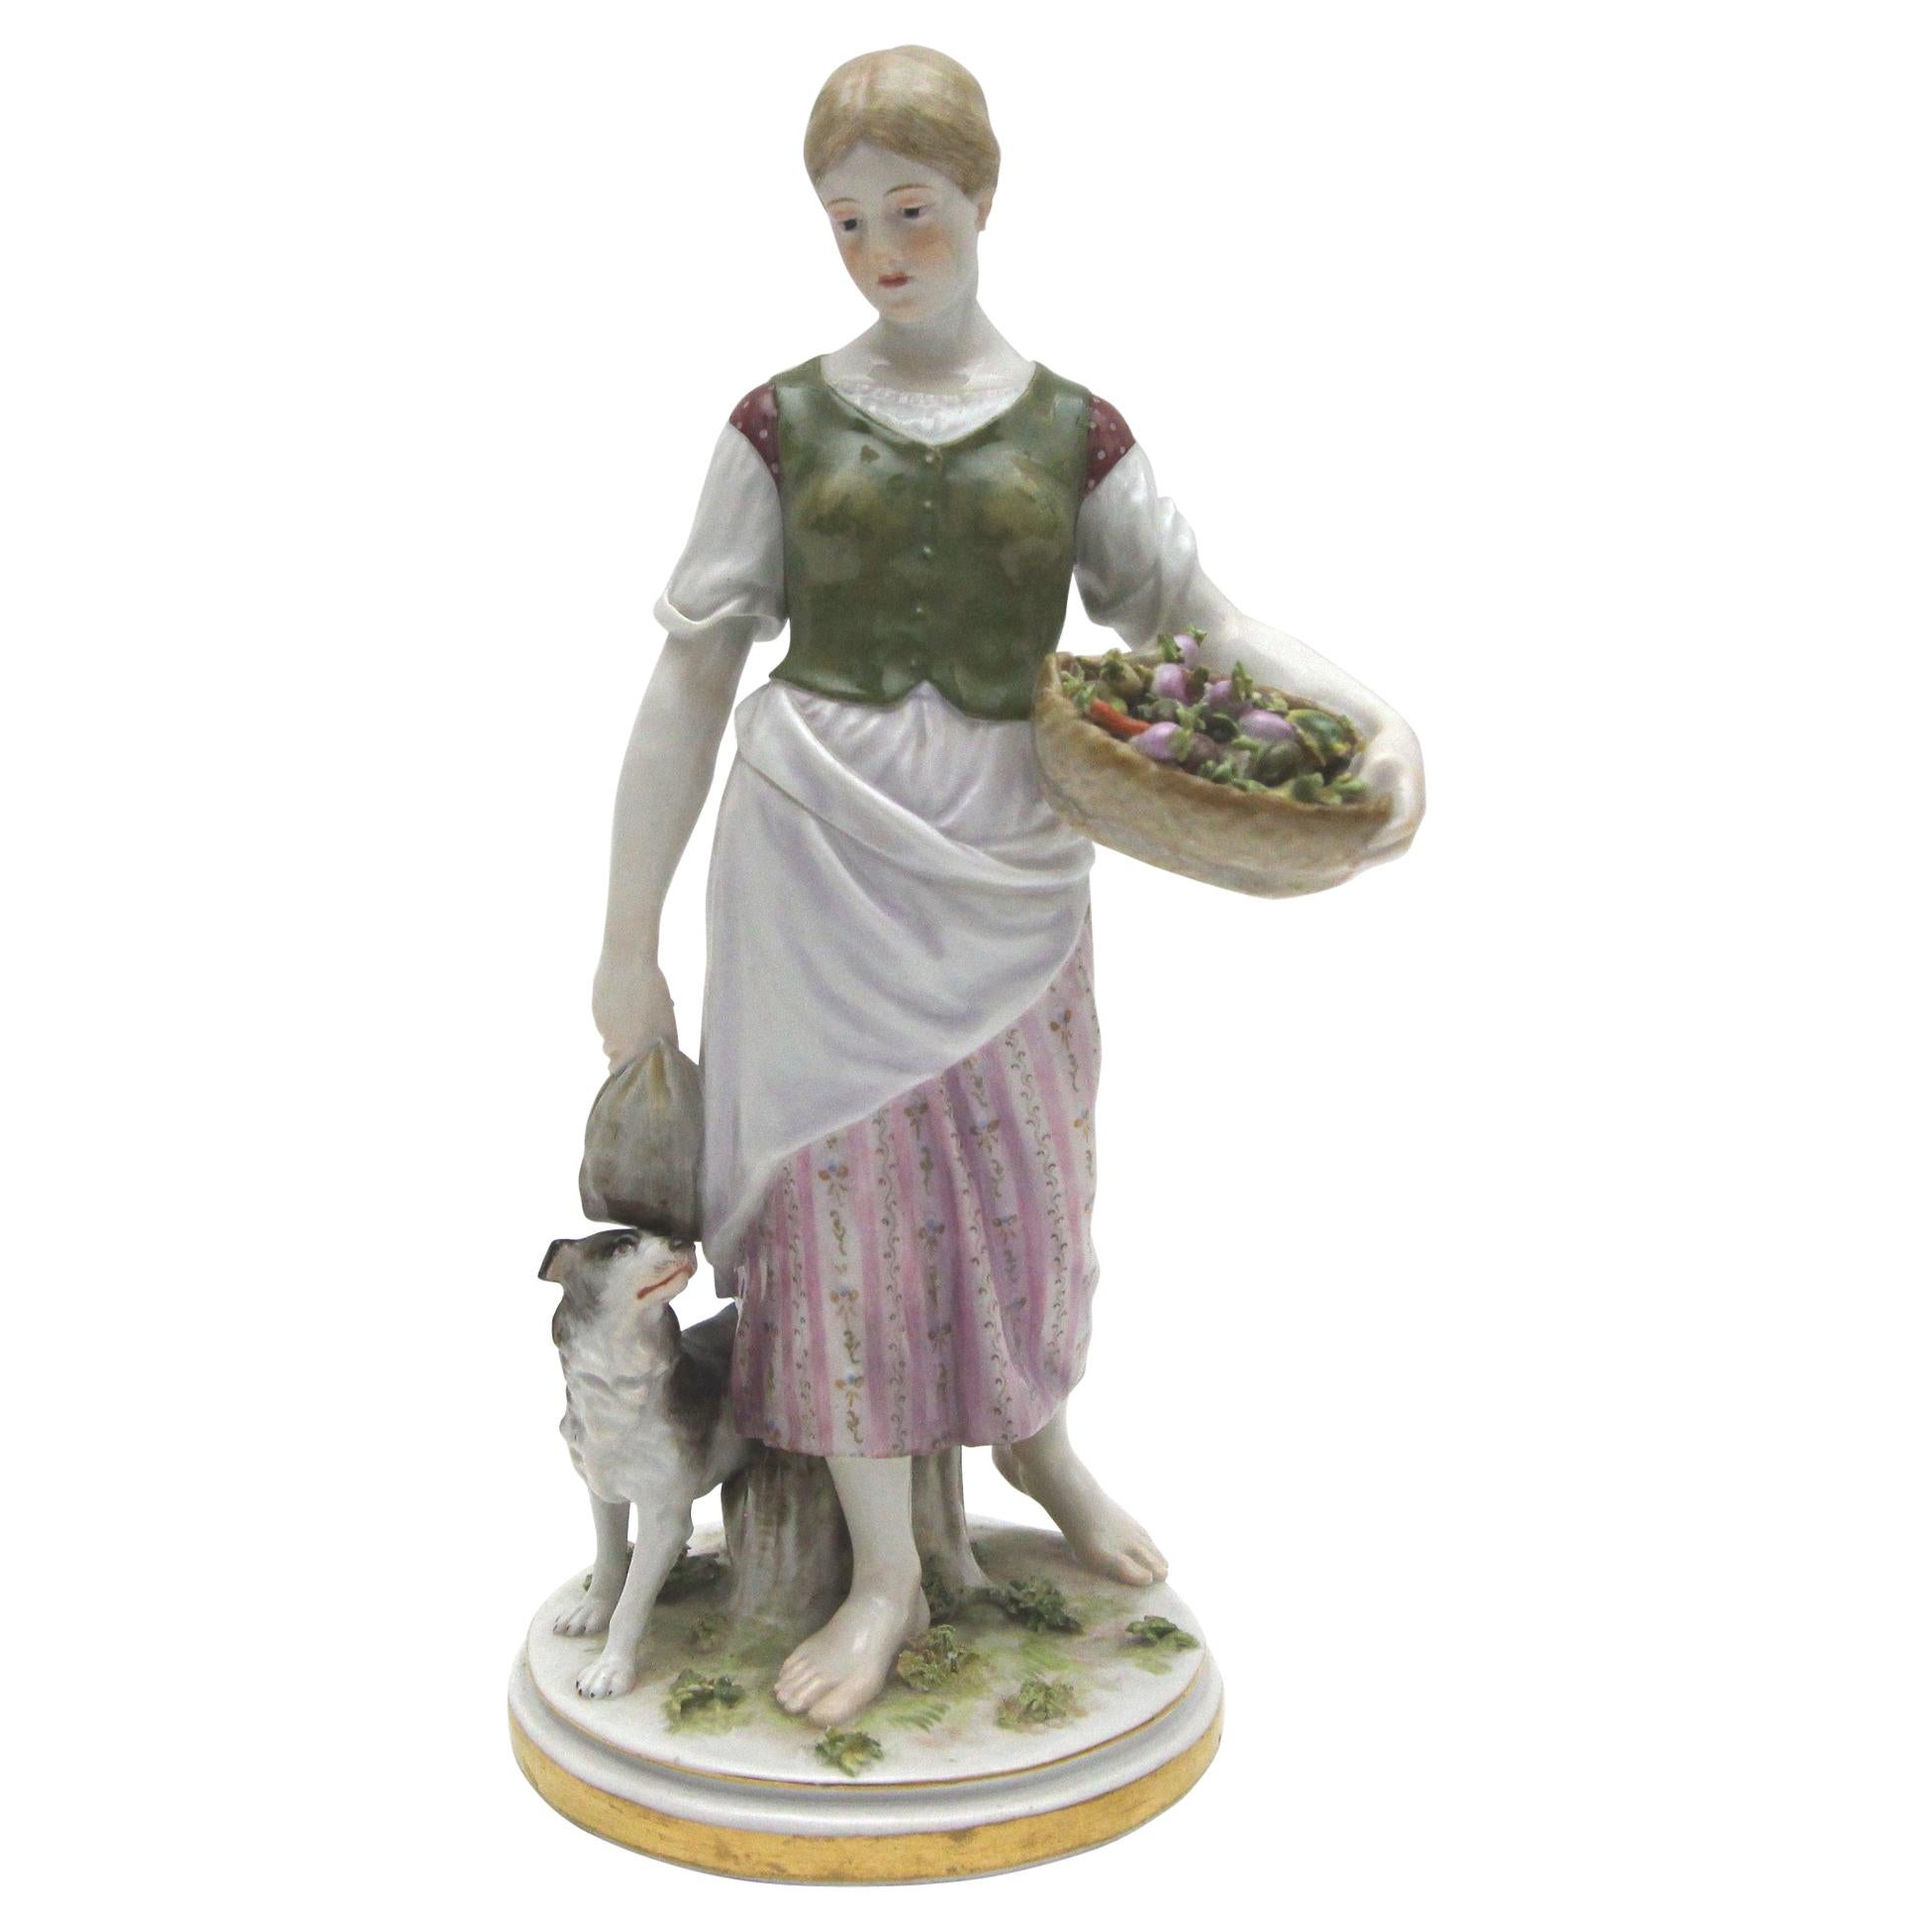 Rare Meissen Porcelain Art Nouveau Figure as a Girl with Dog